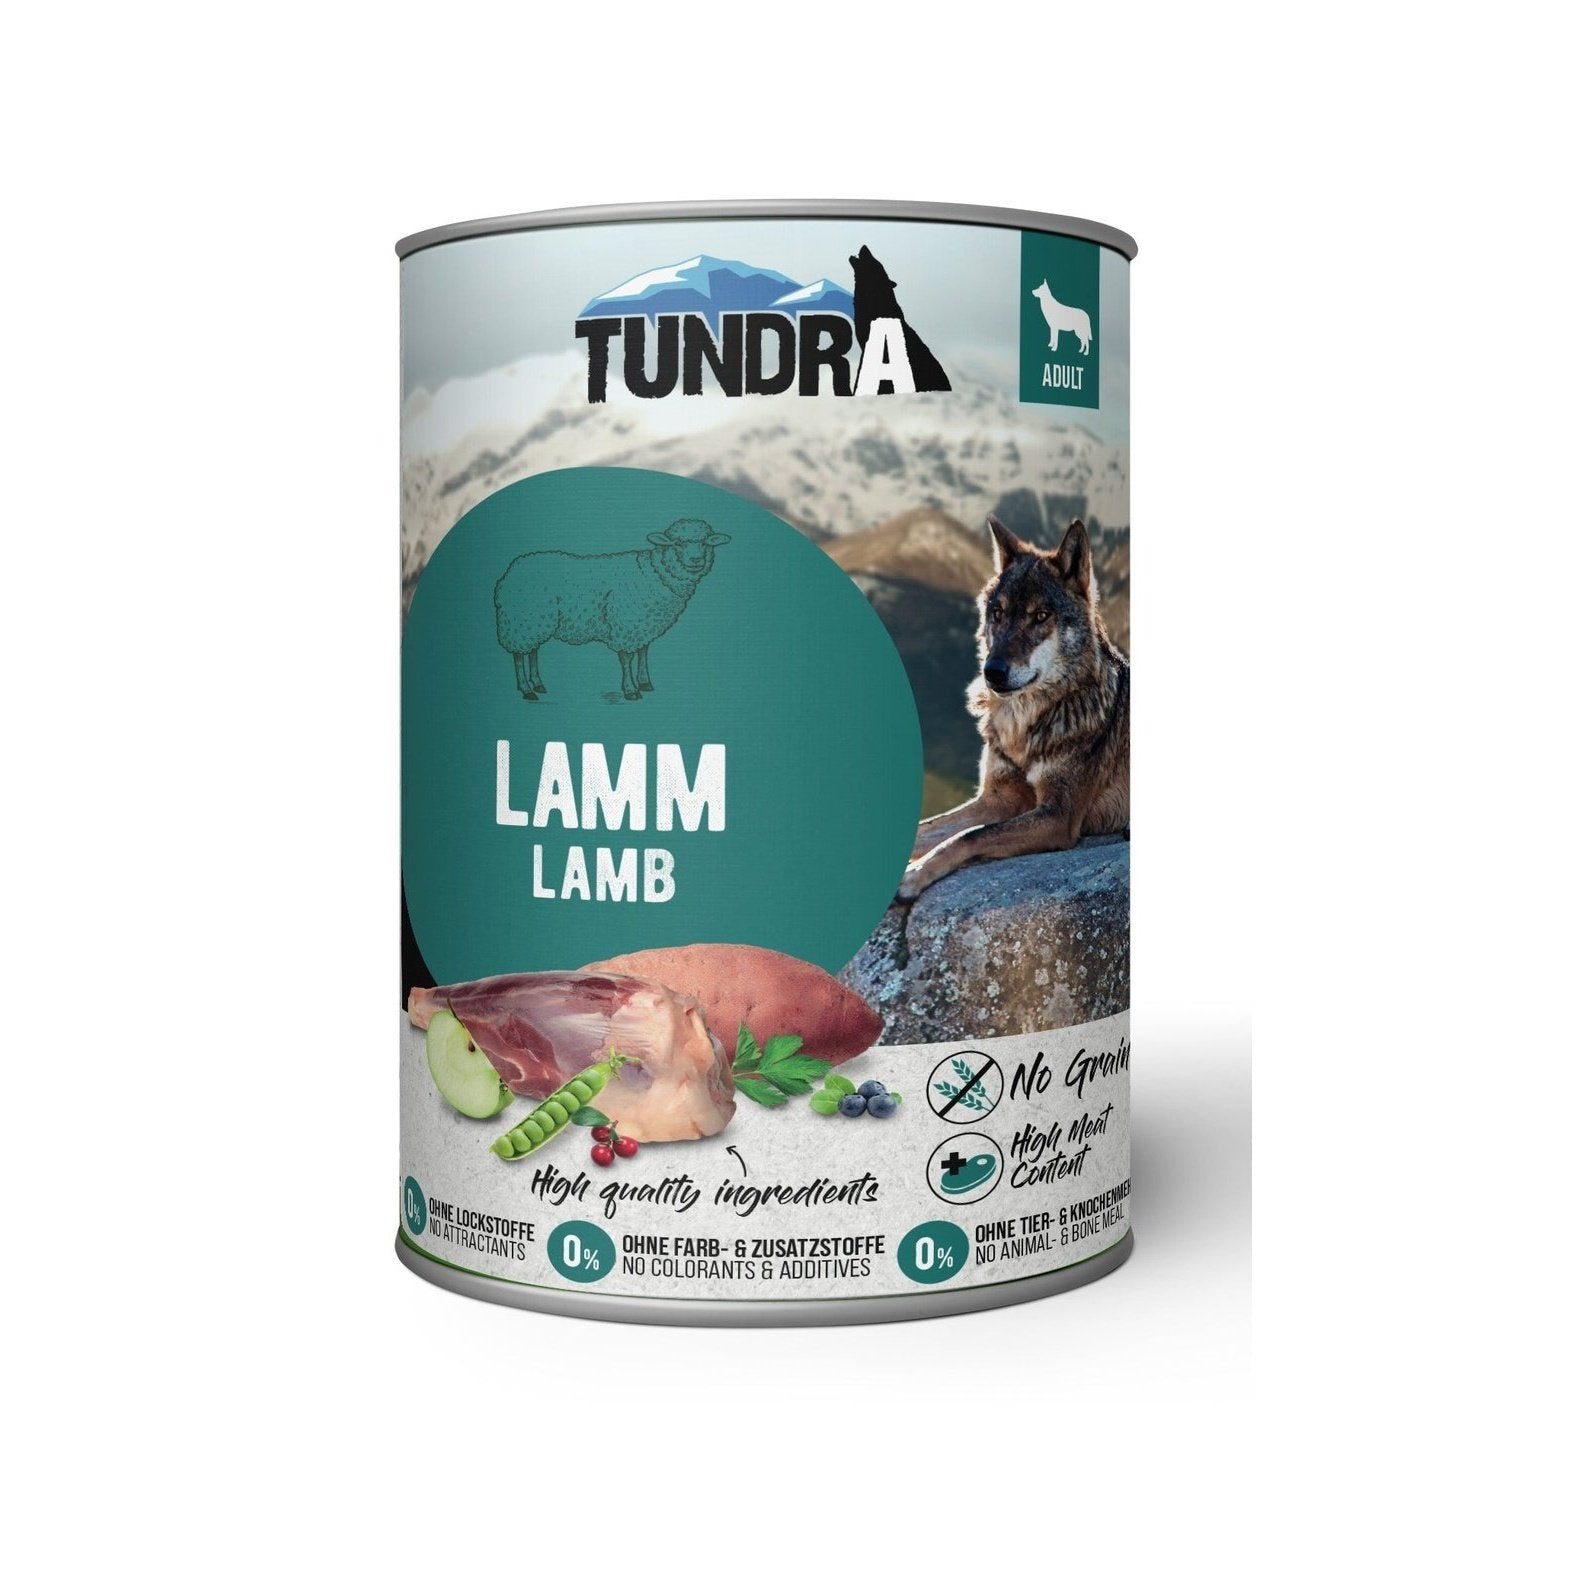 Artikel mit dem Namen Tundra Dog Lamm Dose im Shop von zoo.de , dem Onlineshop für nachhaltiges Hundefutter und Katzenfutter.